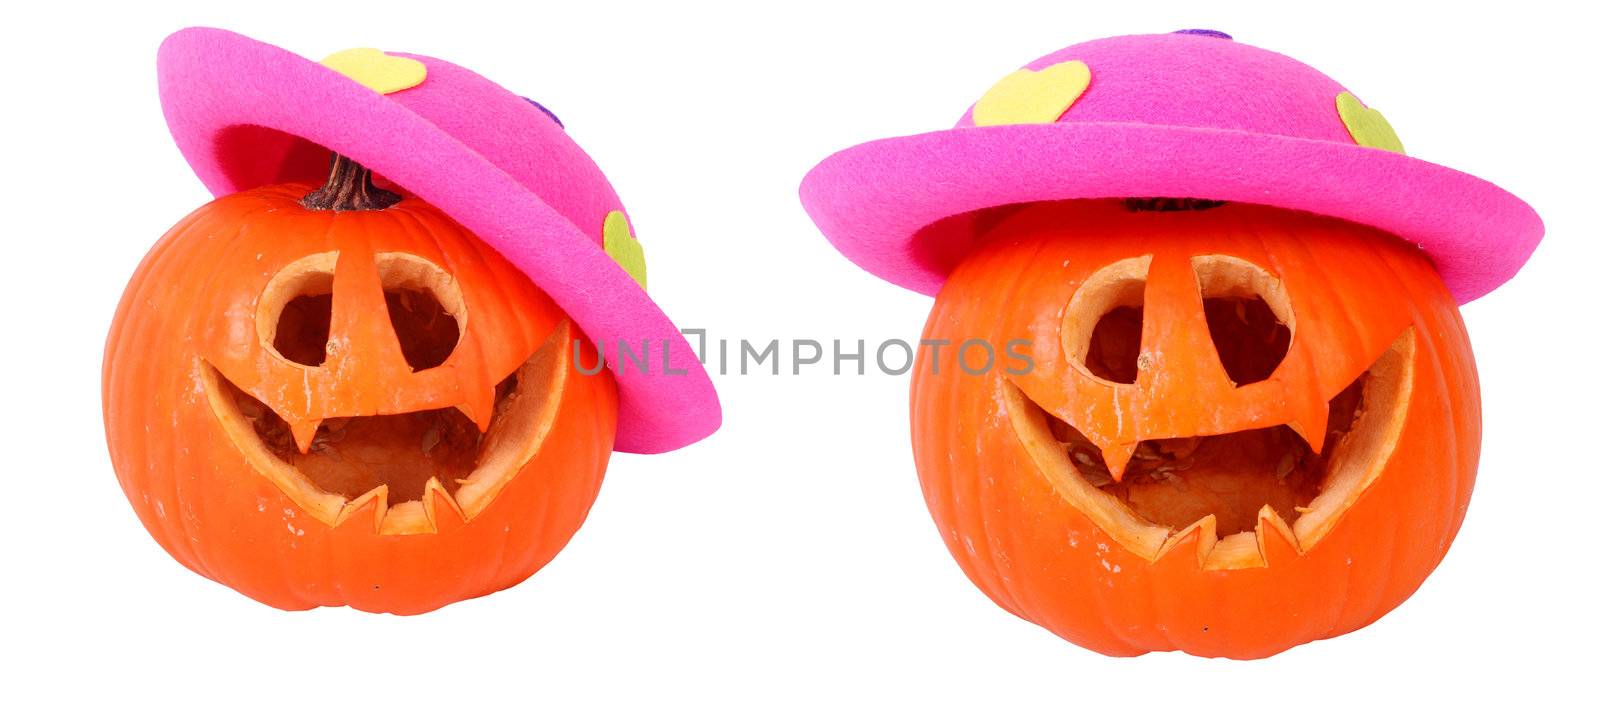 Helloween pumpkin with pink head by tonlammerts